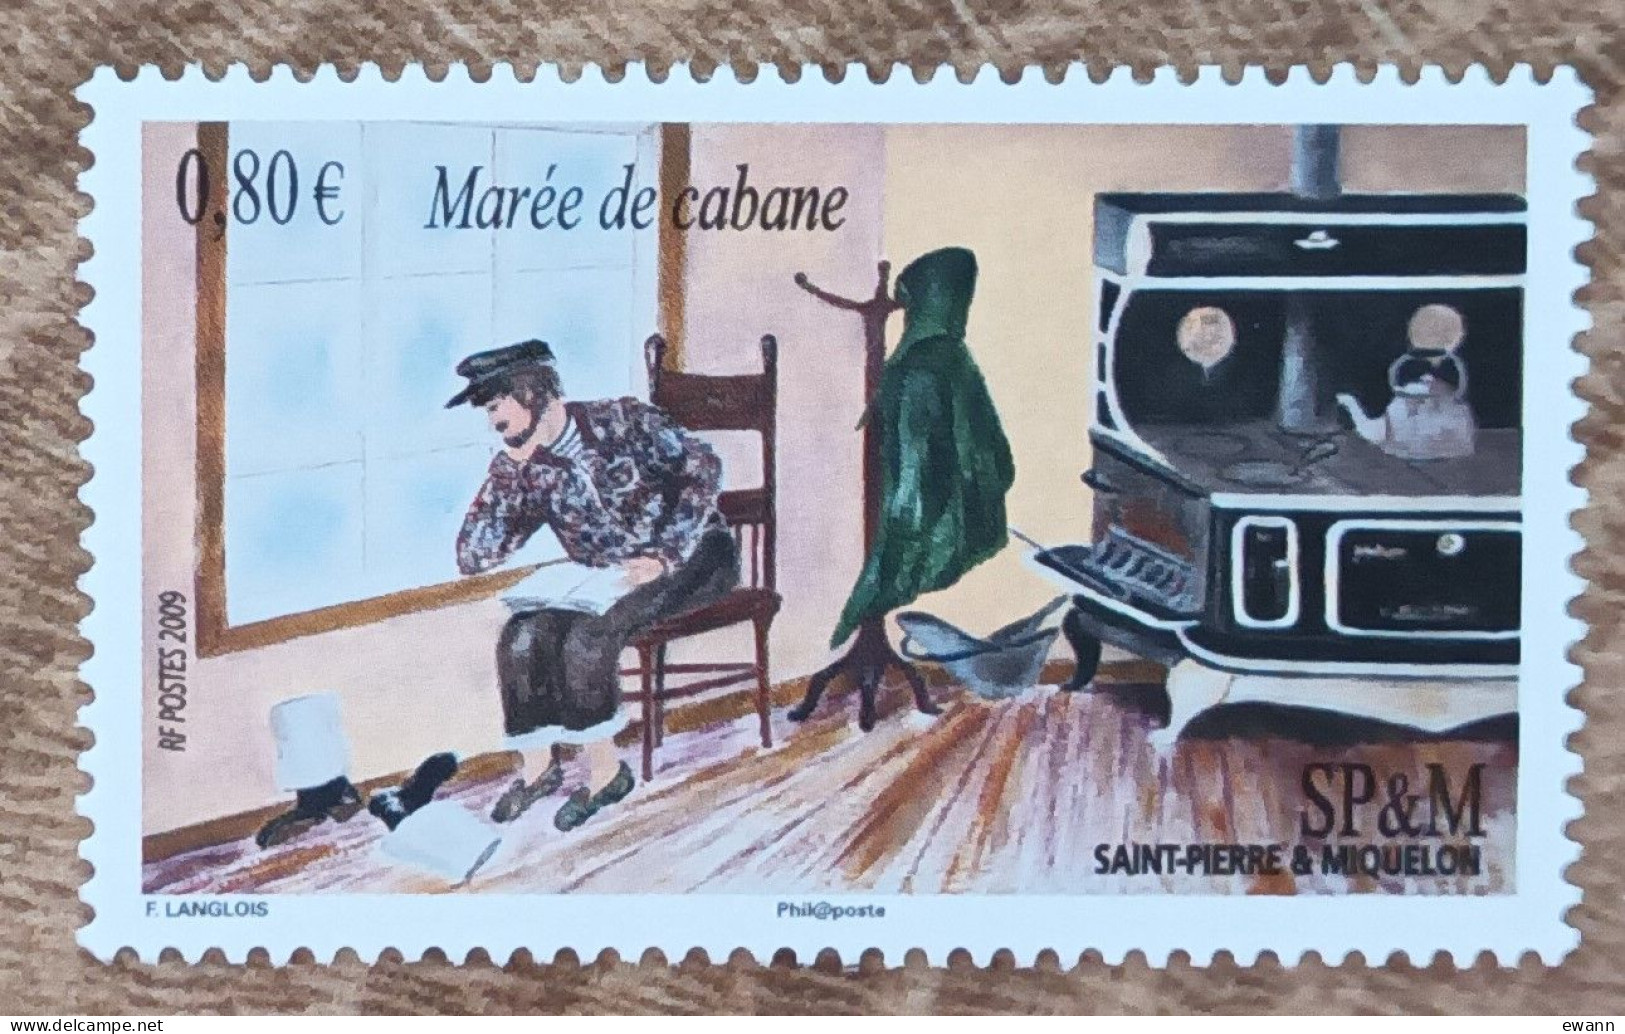 Saint Pierre Et Miquelon - YT N°959 - Expressions Locales / Marée De Cabane - 2009 - Neuf - Nuevos